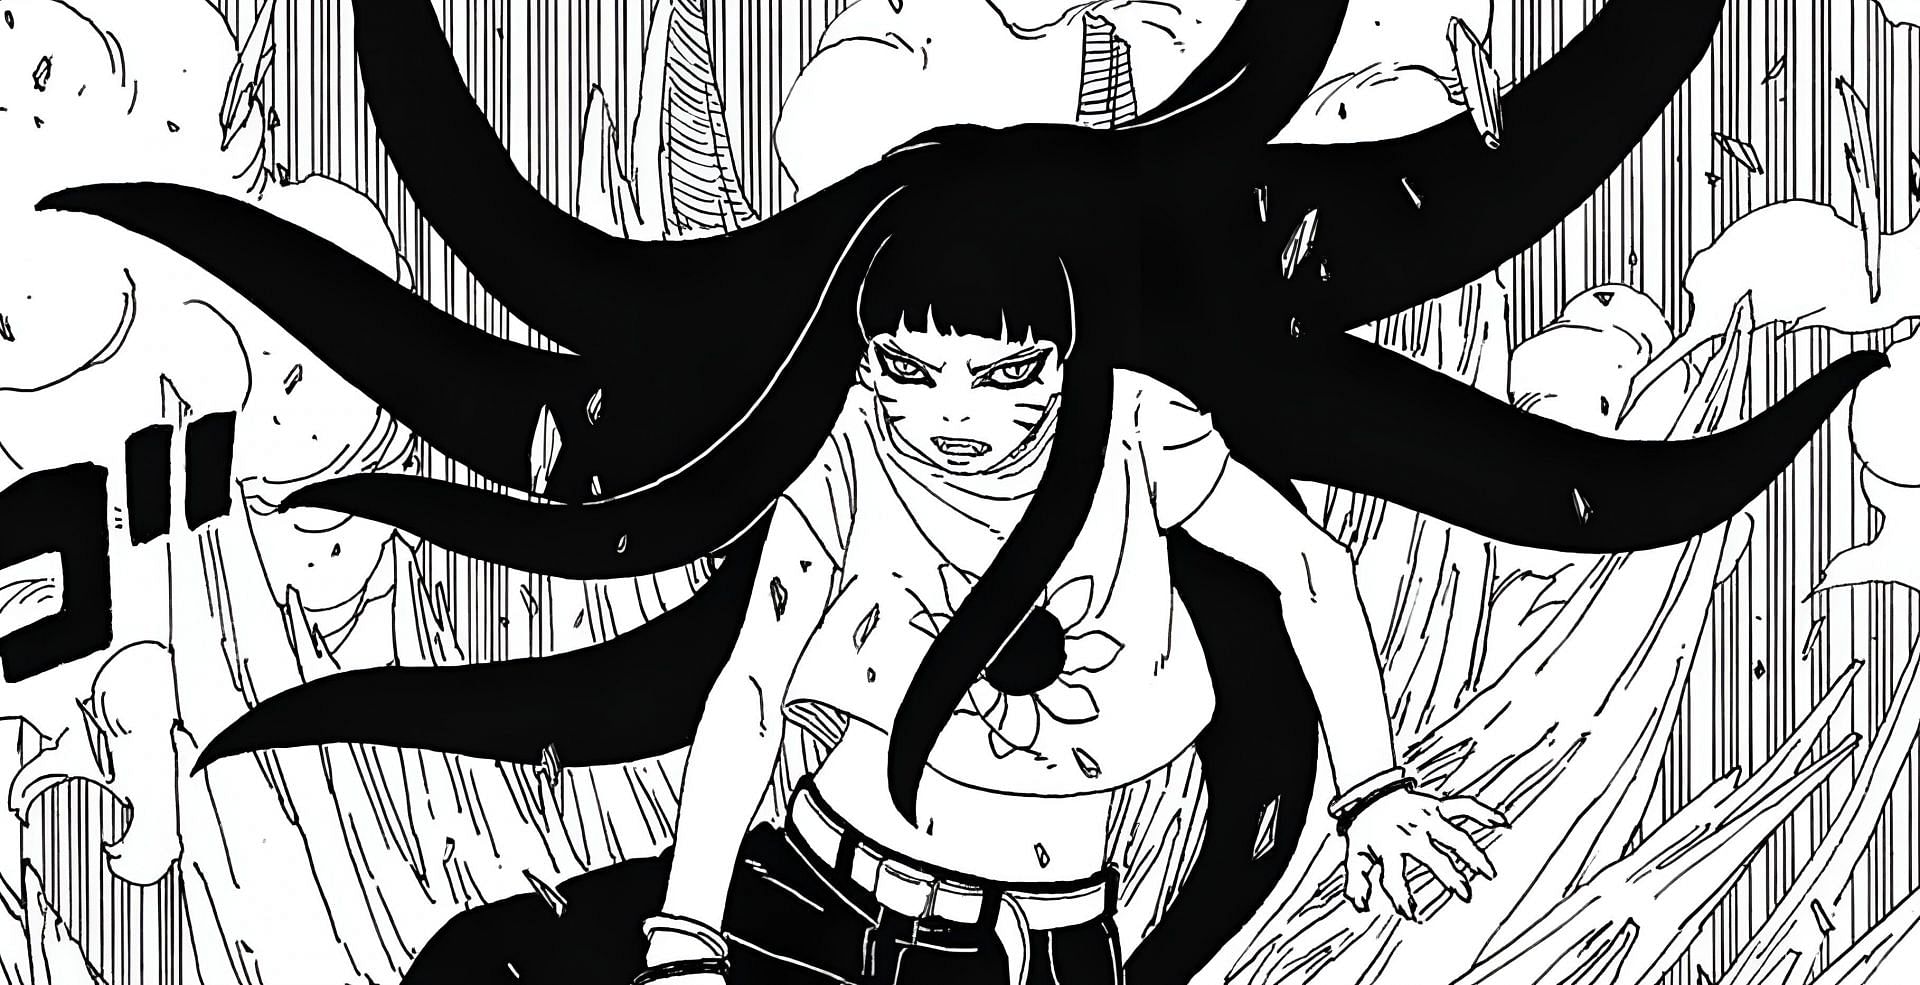 Himawari as seen in the manga (Image via Shueisha)